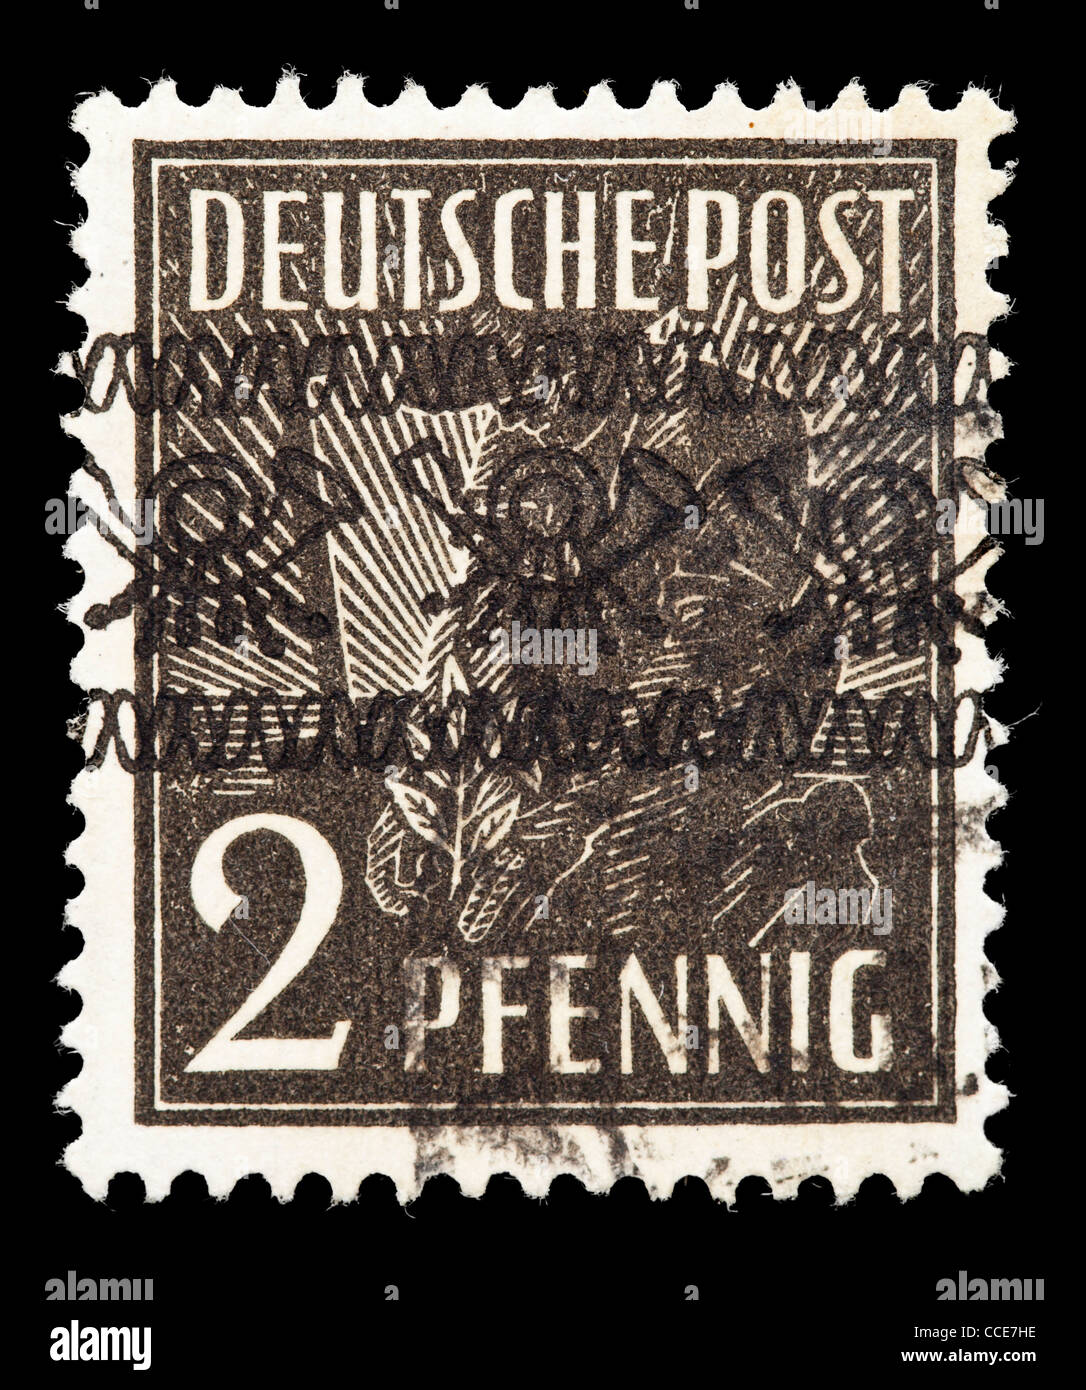 Briefmarke Deutsche Post 1948 Posthorn Band Auf 2 Pfennig